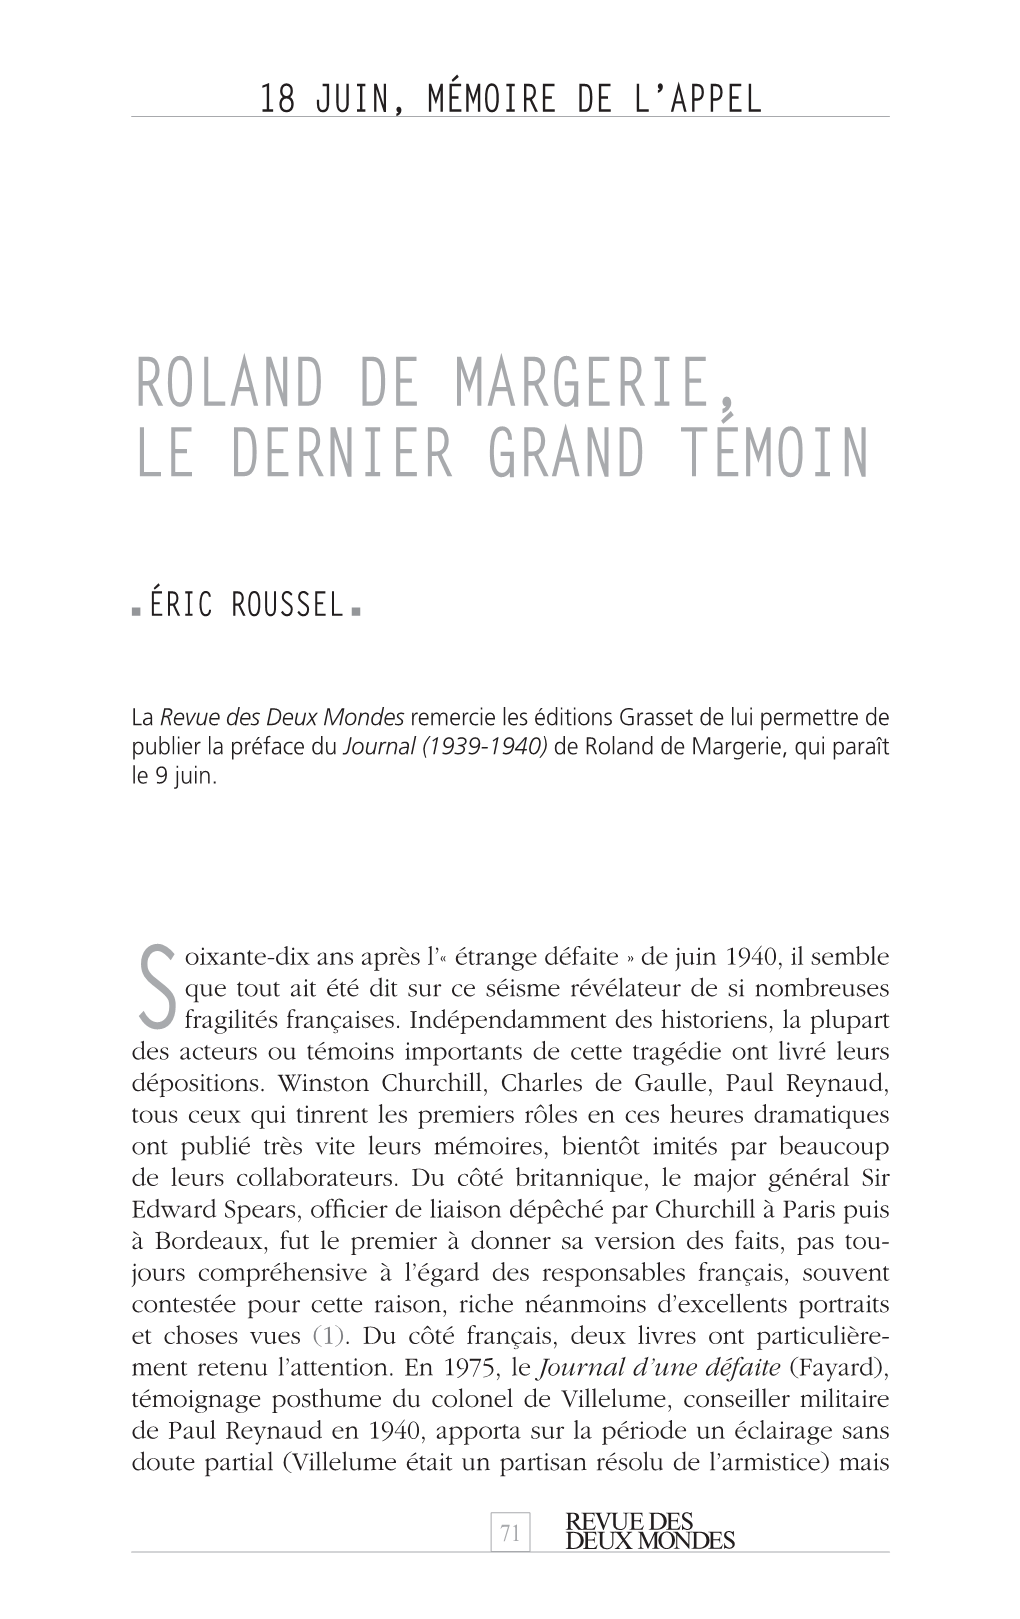 Roland De Margerie, Le Dernier Grand Témoin